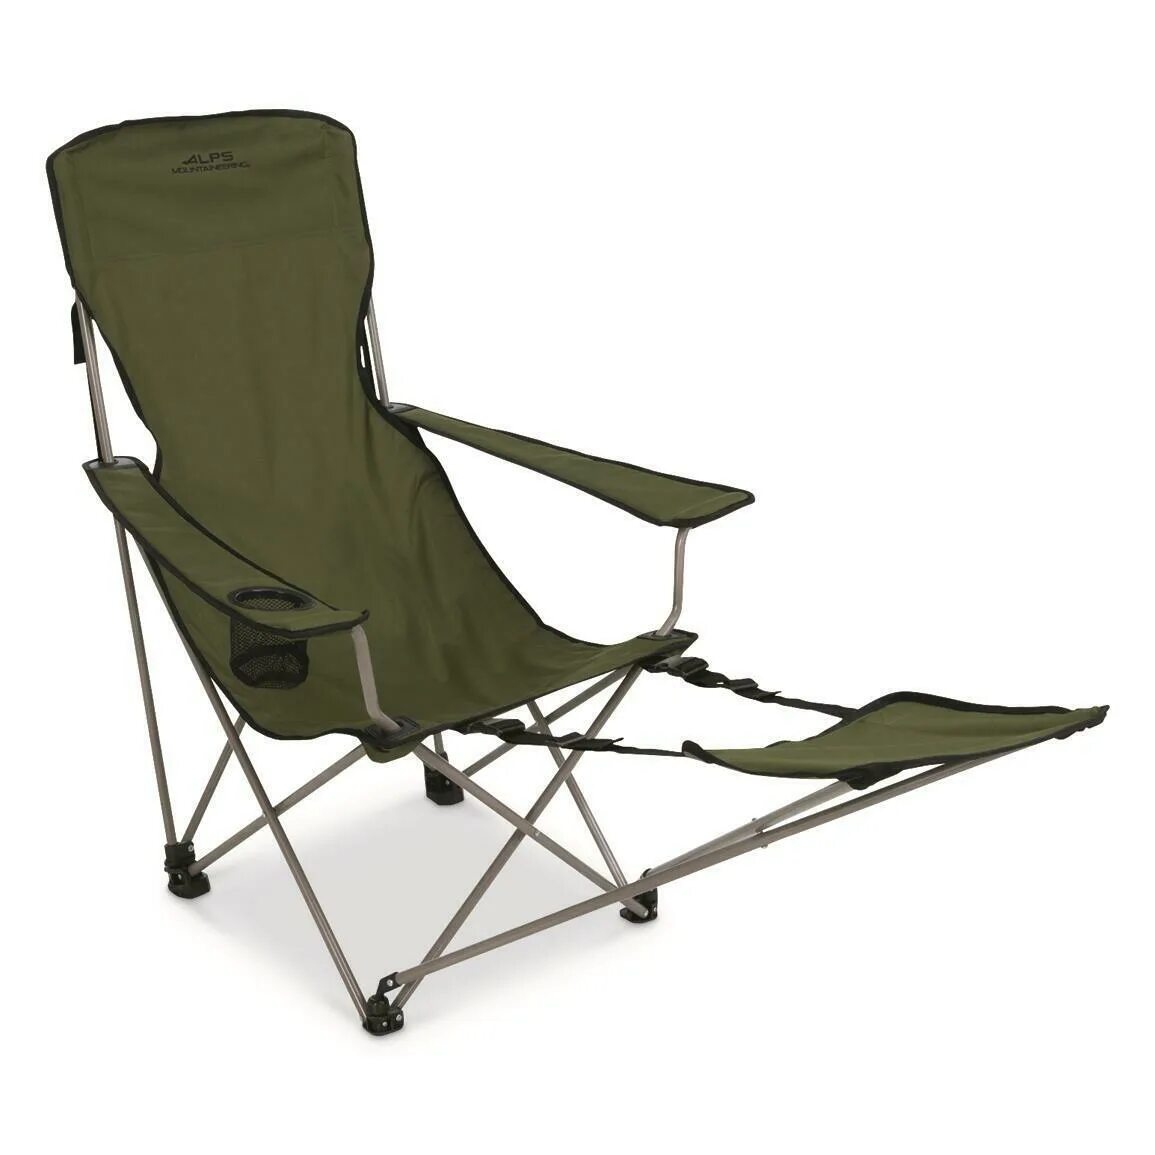 Кресло PALISAD Camping. Кресло туристическое mg203. Складное кресло Frosinone Camping Active. Стул NGT Folding Camping Chair. Кресло походное складное